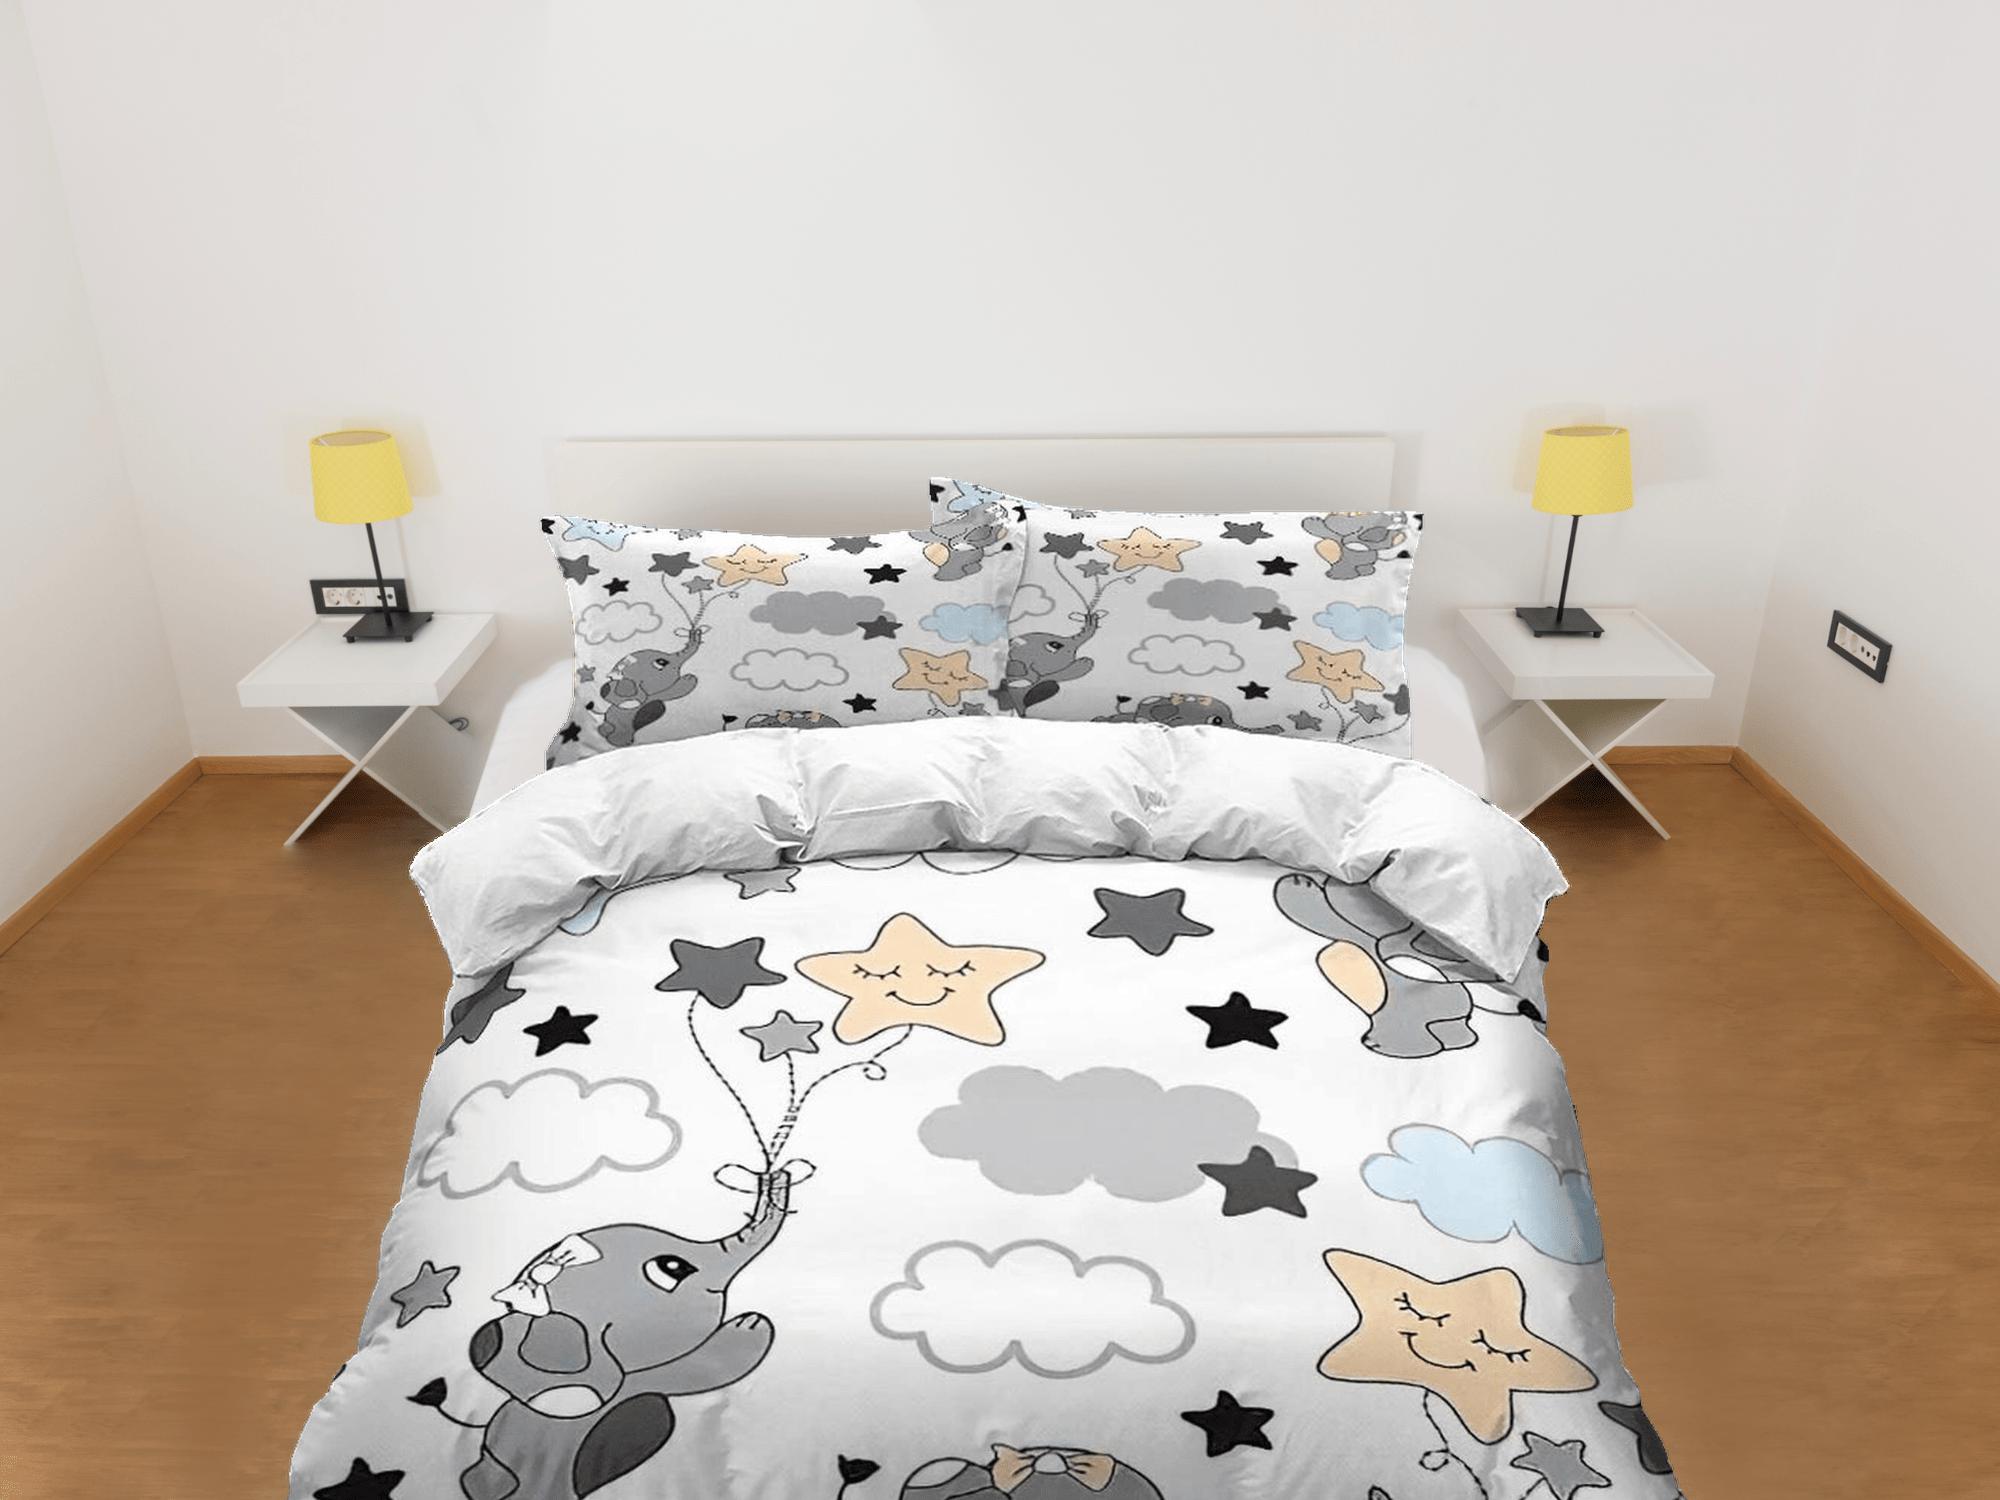 daintyduvet Flying elephant reaching the stars bedding cute duvet cover set, kids bedding full, nursery bed decor, elephant baby shower, toddler bedding